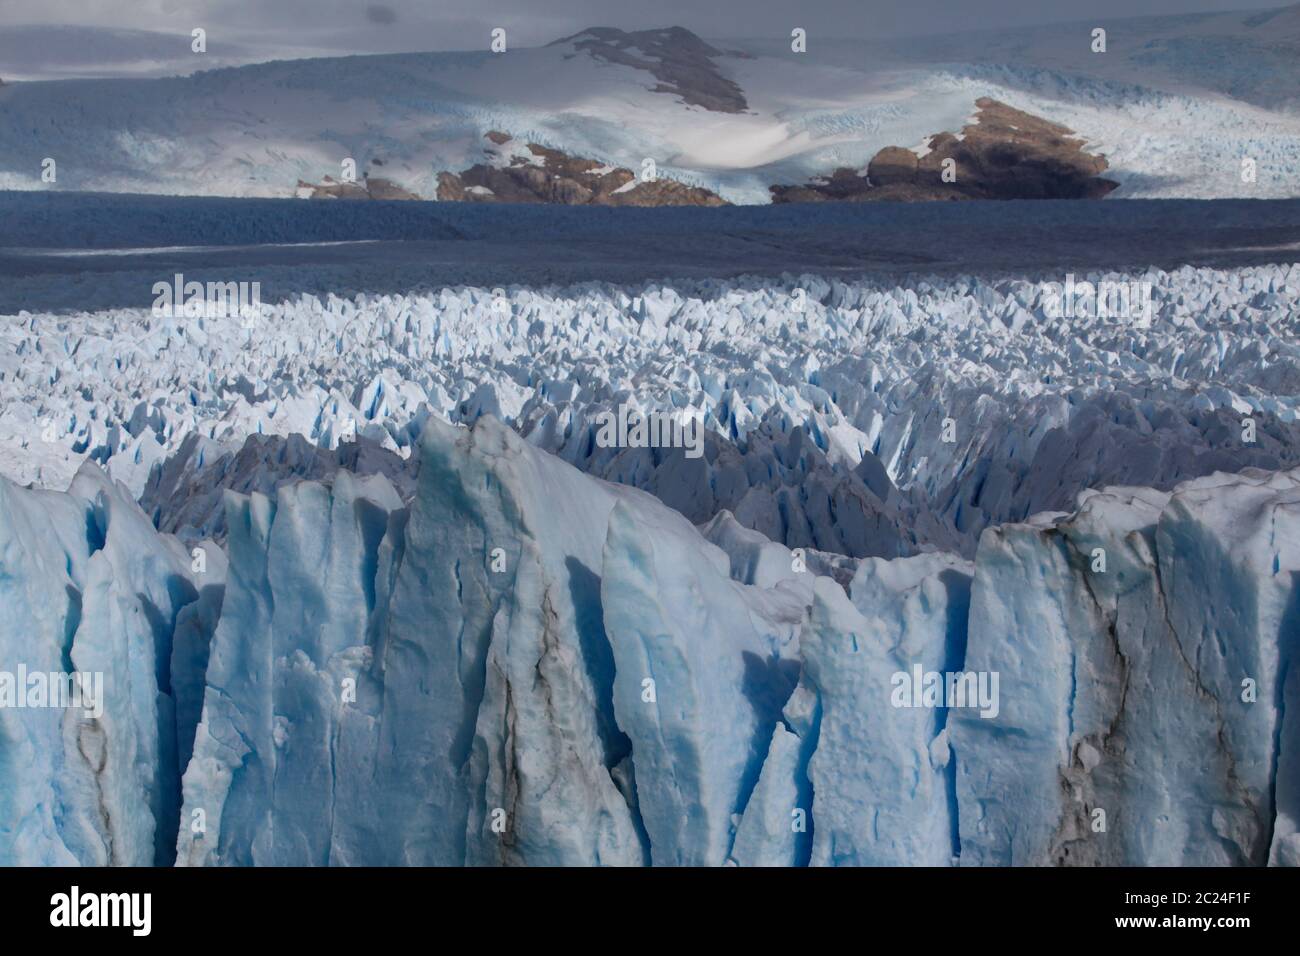 La massa di ghiaccio del ghiacciaio Perito Moreno si espande infinitamente in larghezza Foto Stock